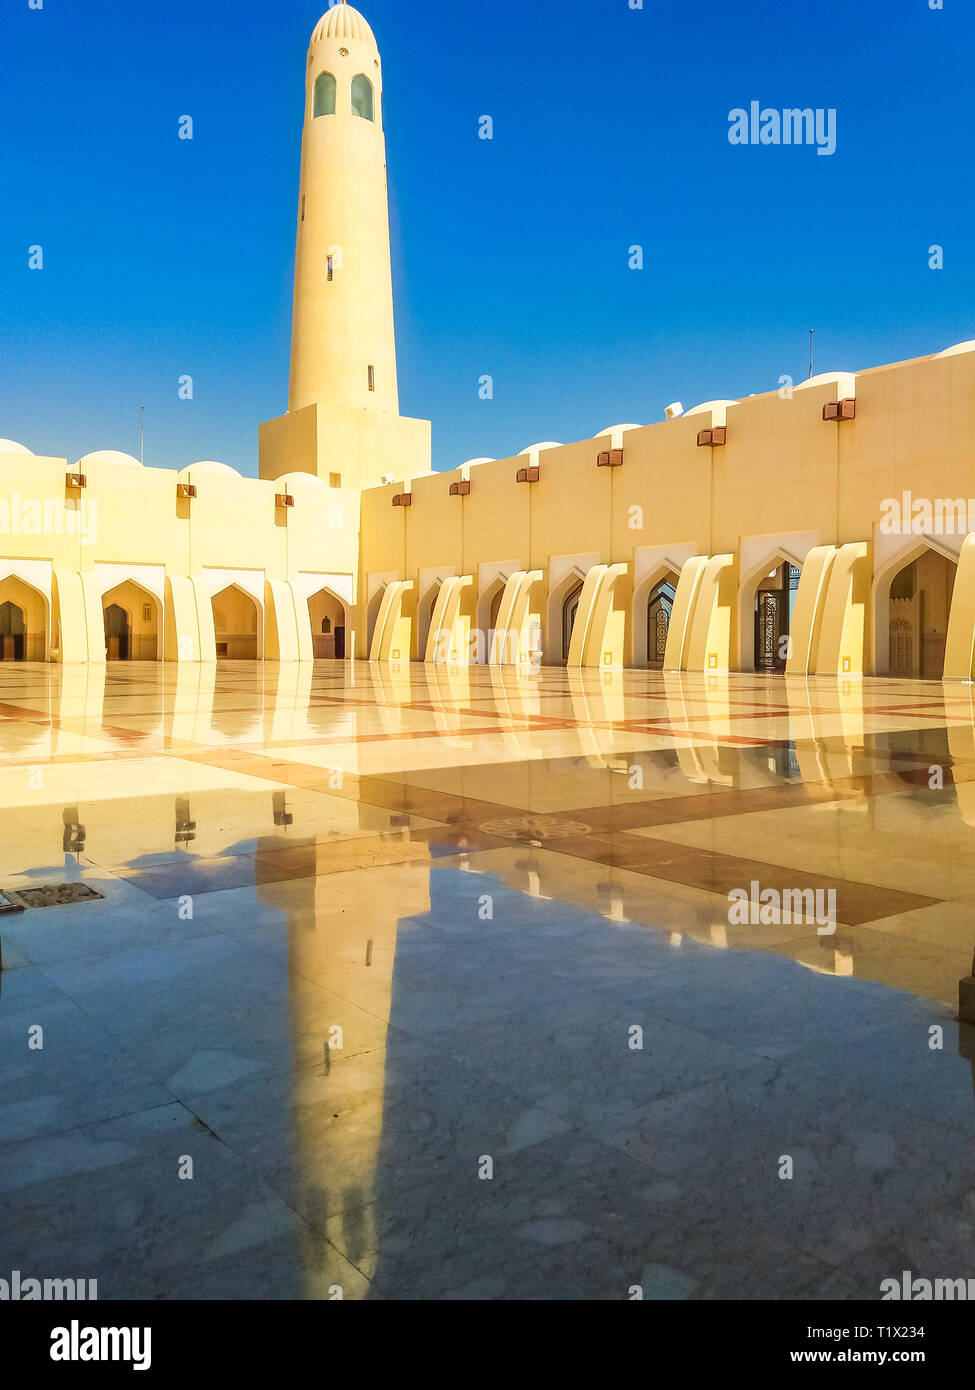 Doha, Katar - 21. Februar 2019: Innenhof mit Minaretten und Kuppeln an einem sonnigen Tag wider. Imam Abdul Wahhab Moschee oder Katar Staats Moschee in der Mitte Stockfoto